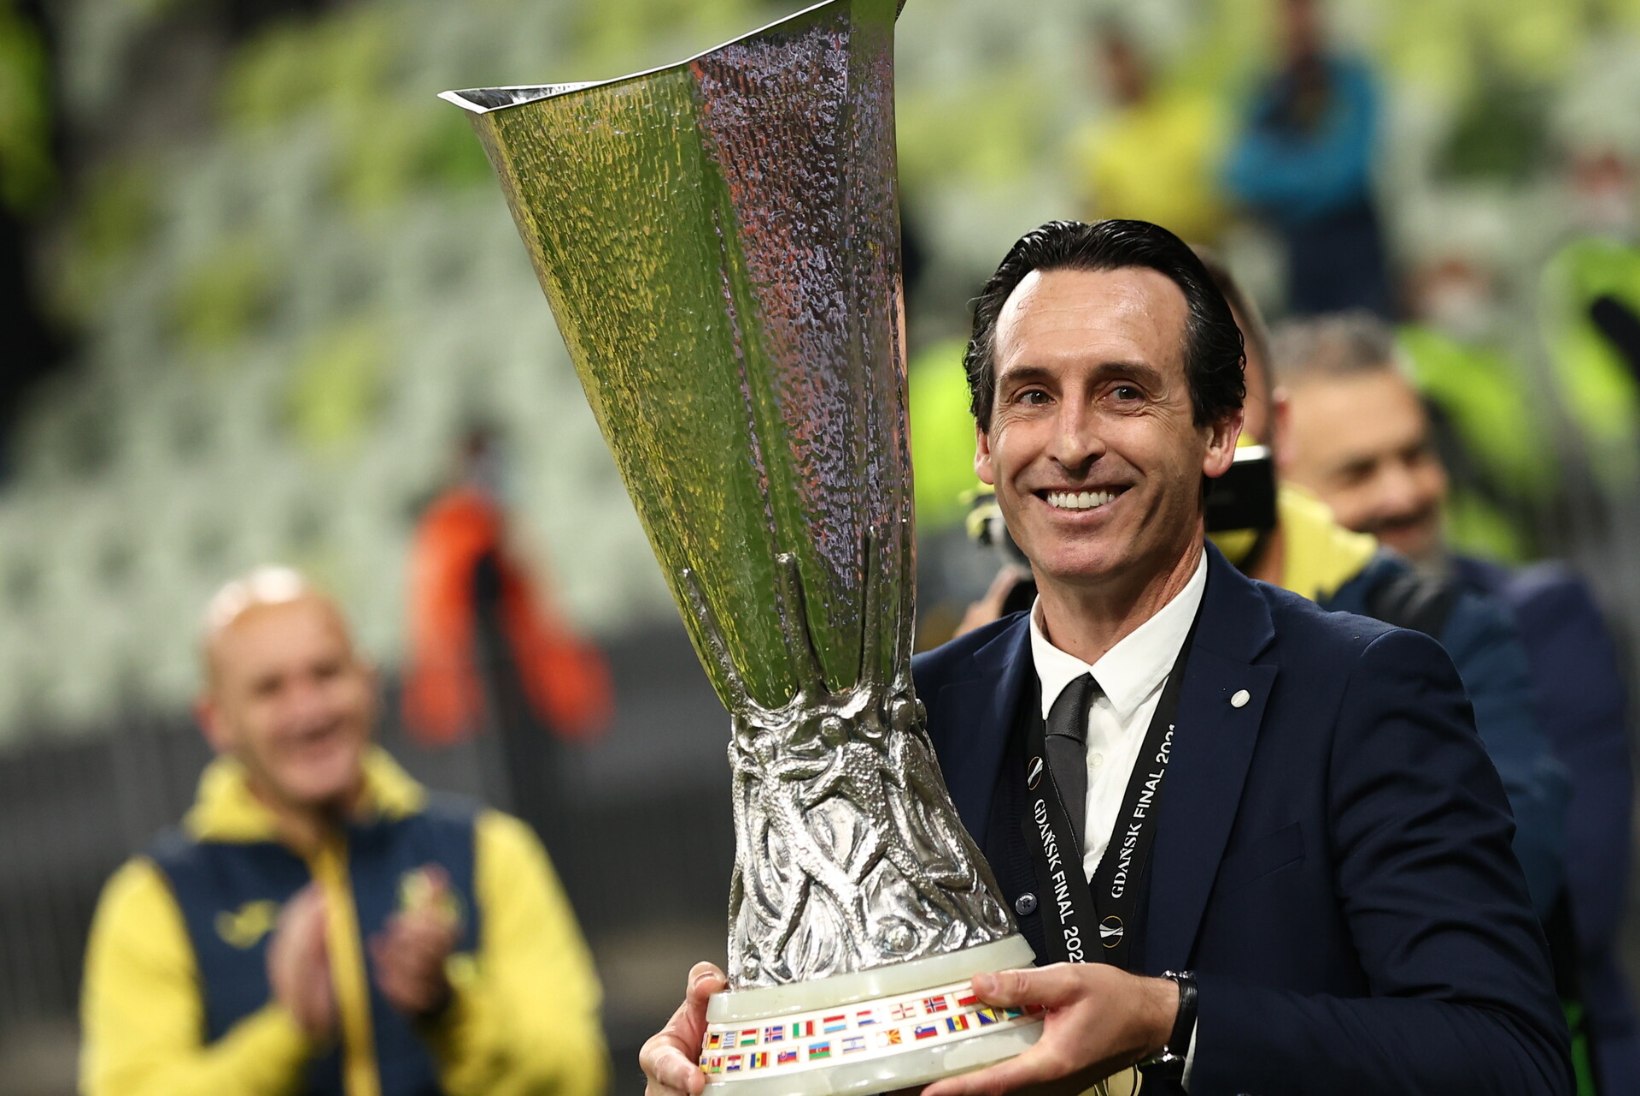 VÄGEV VUTIÕHTU: Emery võitis oma neljanda ja Villarreal ajaloo esimese Euroopa liiga tiitli